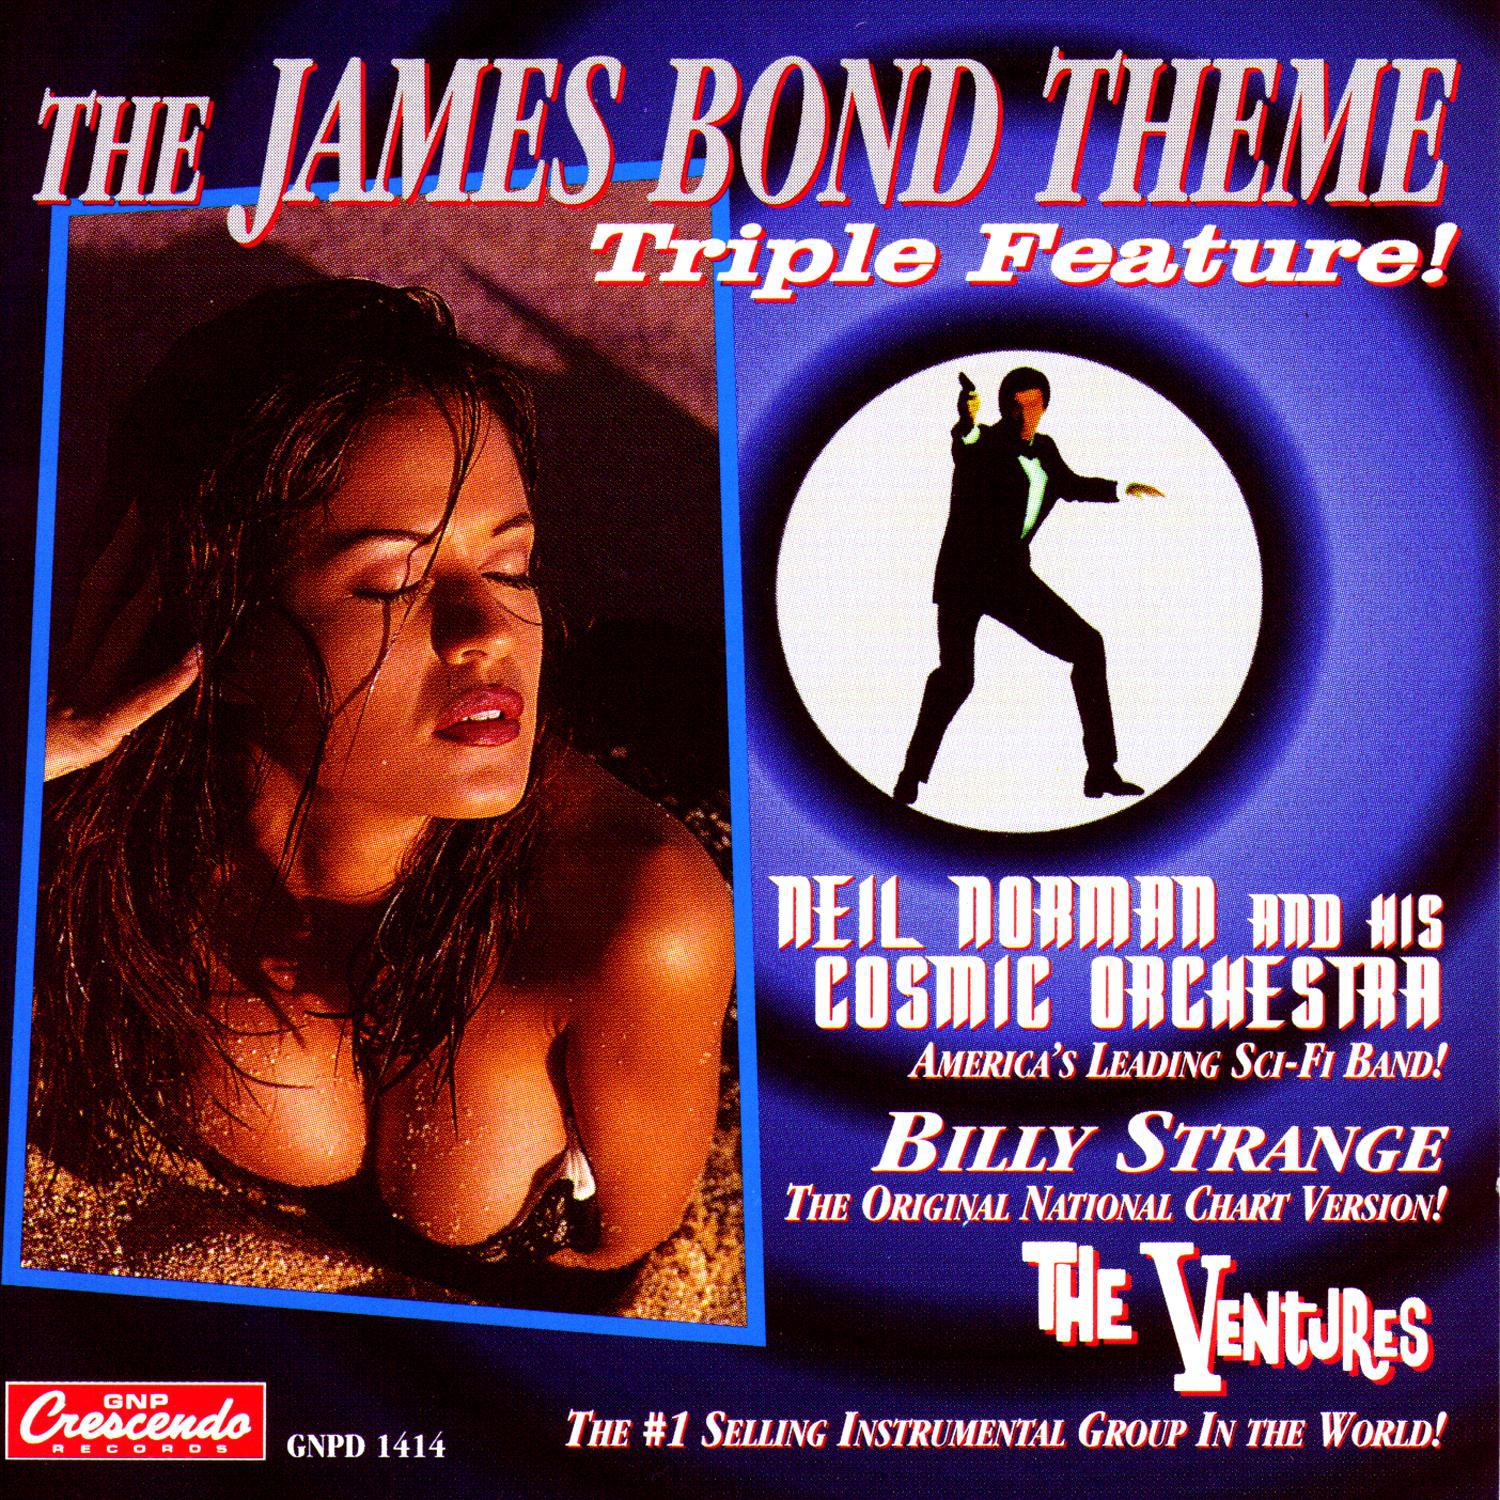 The James Bond Theme - Triple Feature!